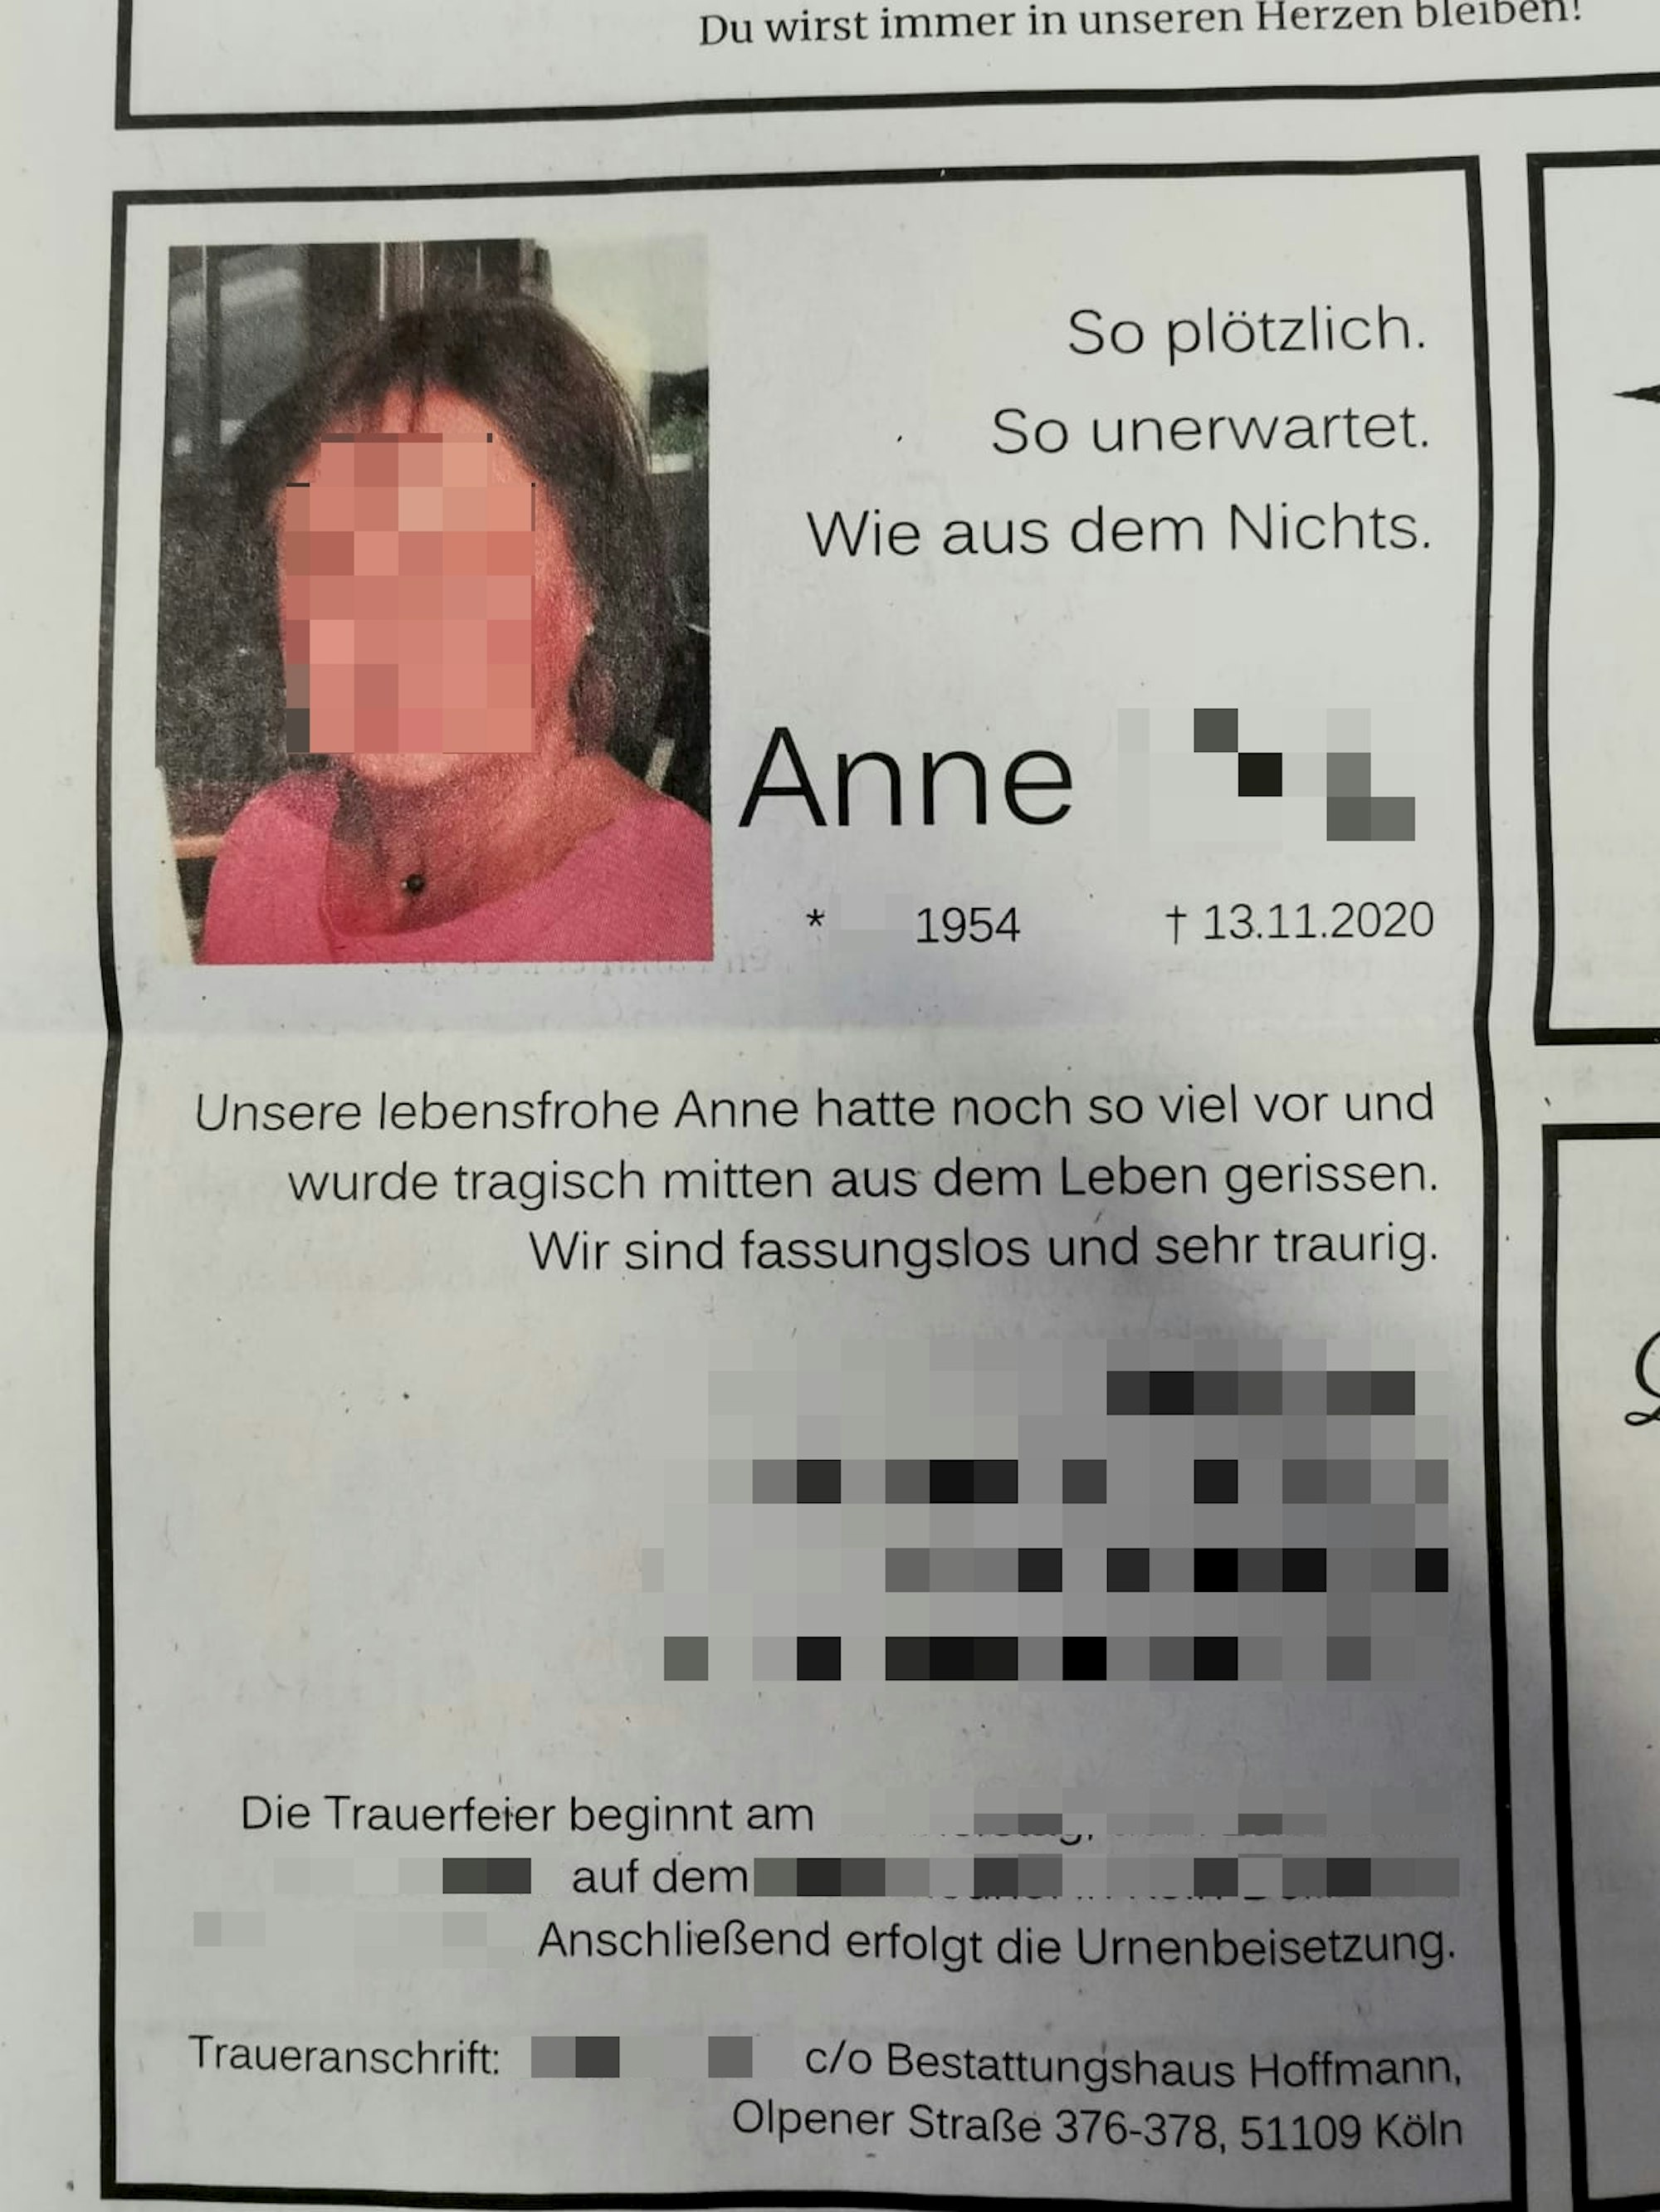 Traueranzeige für Anne M. aus Köln. Ihr Gesicht und einige Details in der Anzeige sind aus Datenschutzgrünen gepixelt.